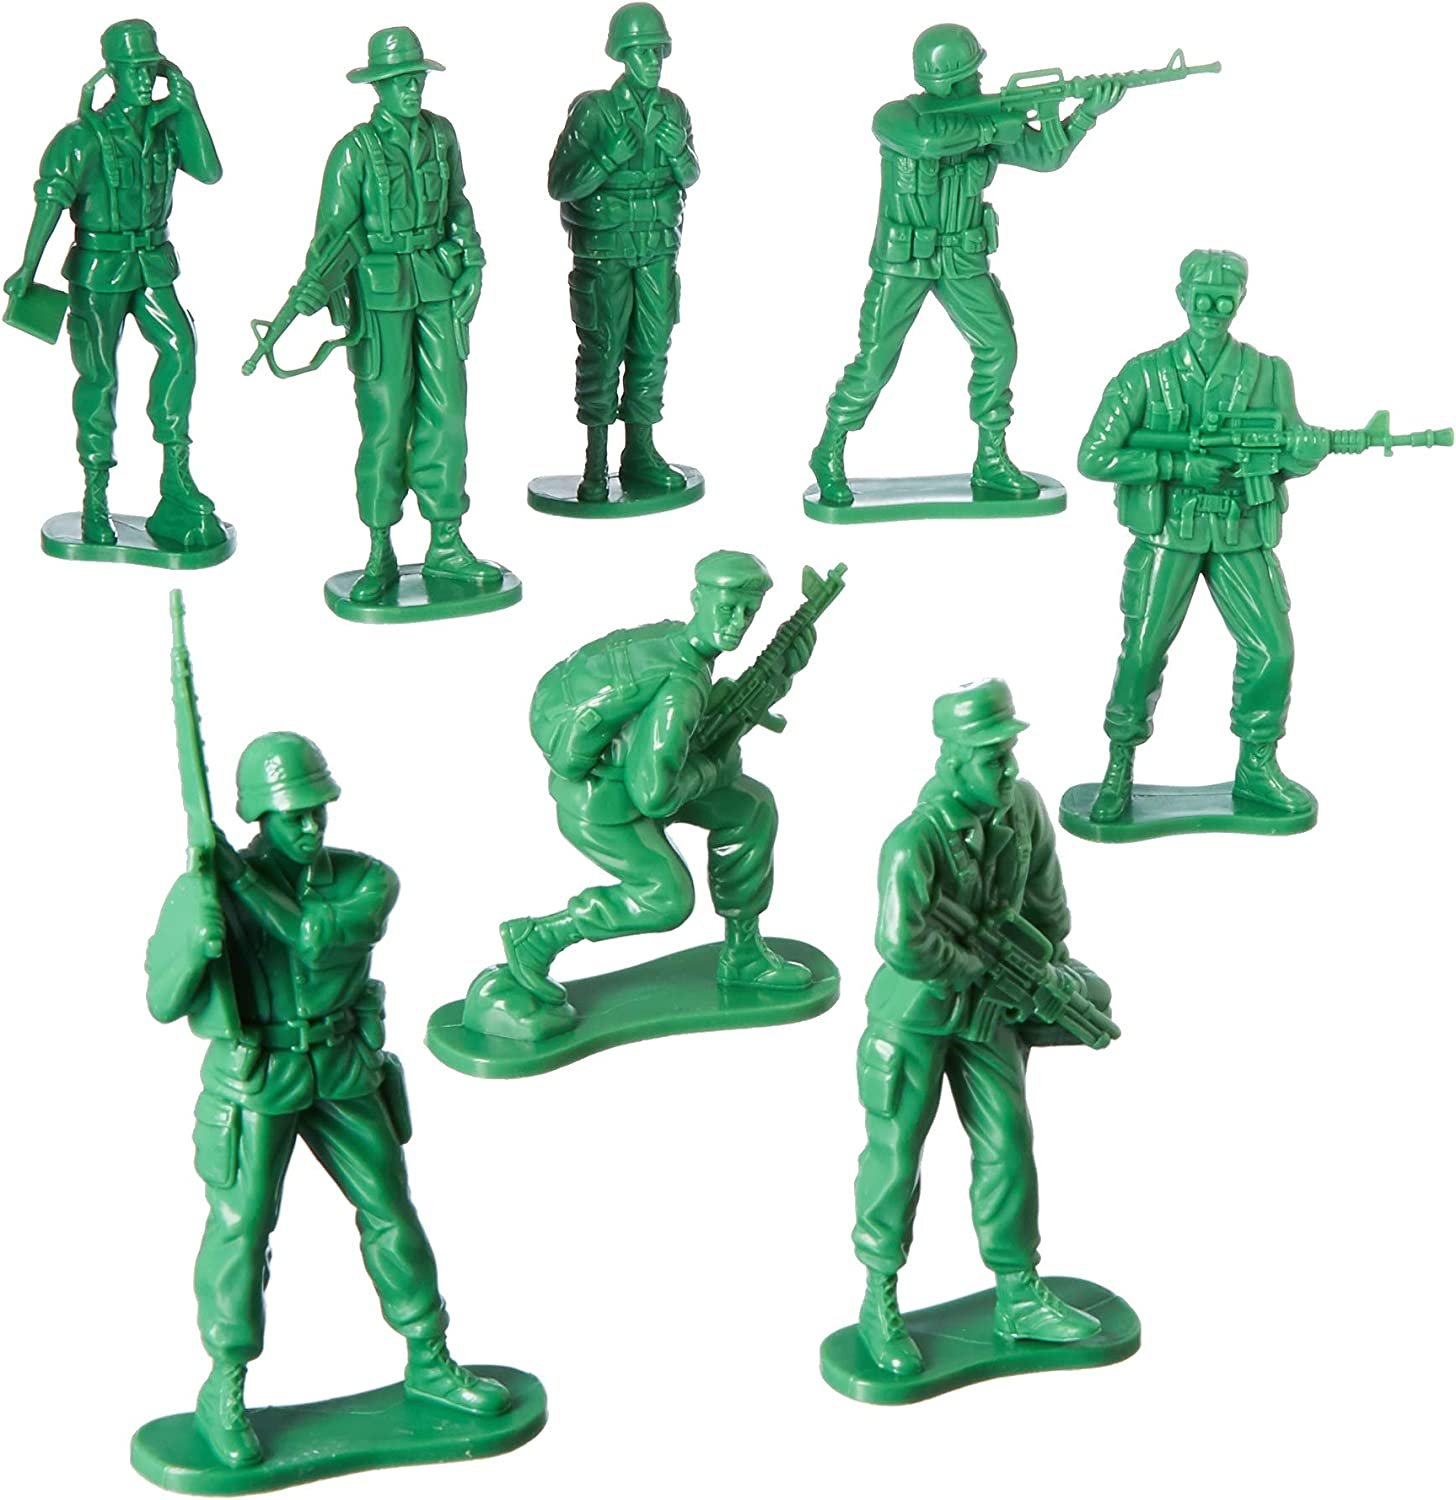 Какие есть солдатики. Солдатики Army men. Солдатики pvblivs Toy Soldiers. Игрушечные солдатики Army men. Us Toy Company 7958 large Soldiers.